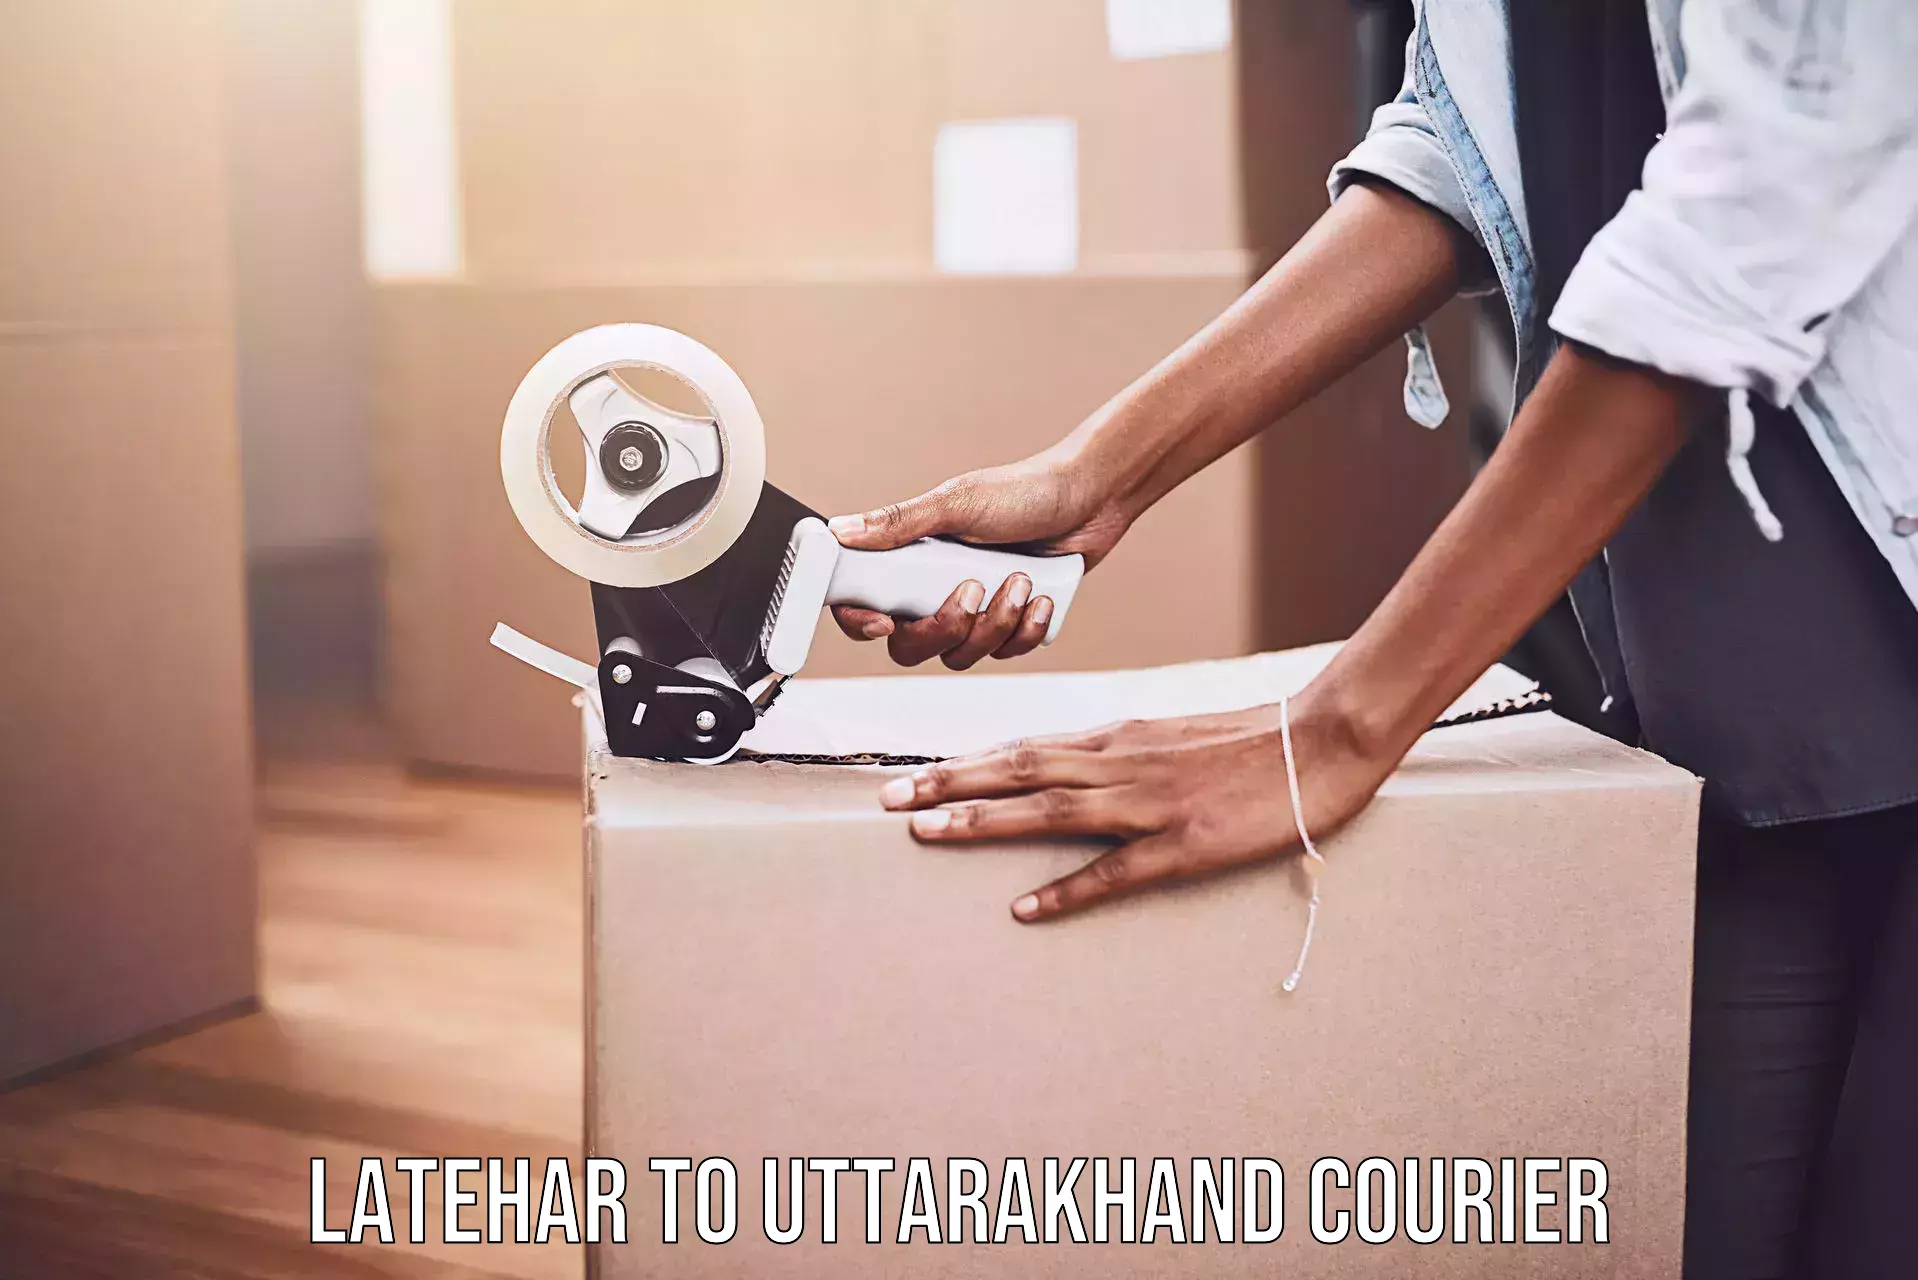 Courier service comparison Latehar to Bhimtal